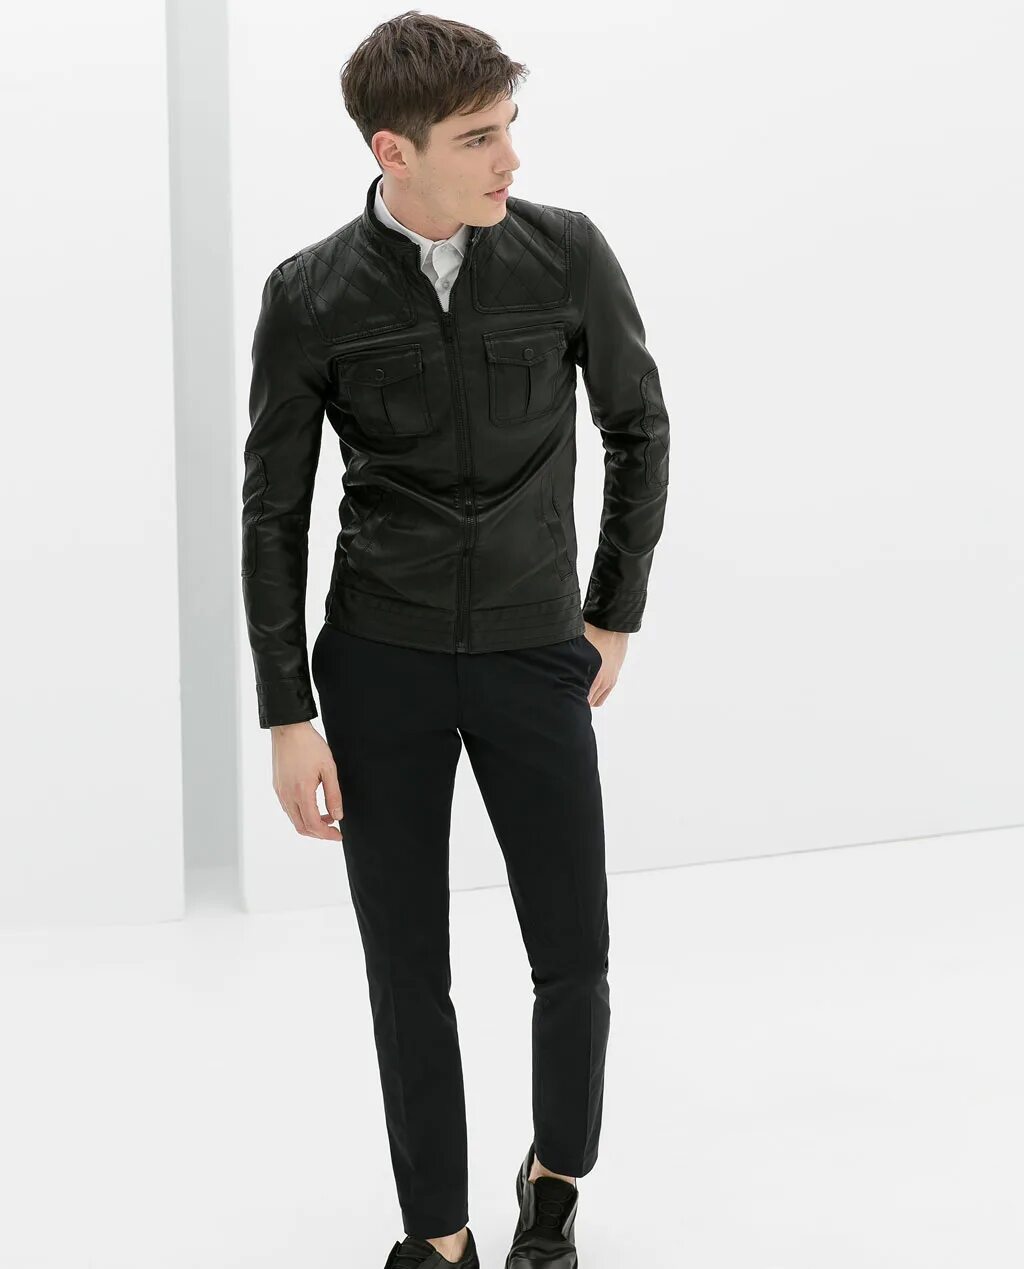 Купить zara мужские. Куртка мужская Basic Zara man черная. 77302 Zara куртка мужская. Zara man косуха. Черная куртка Zara man.